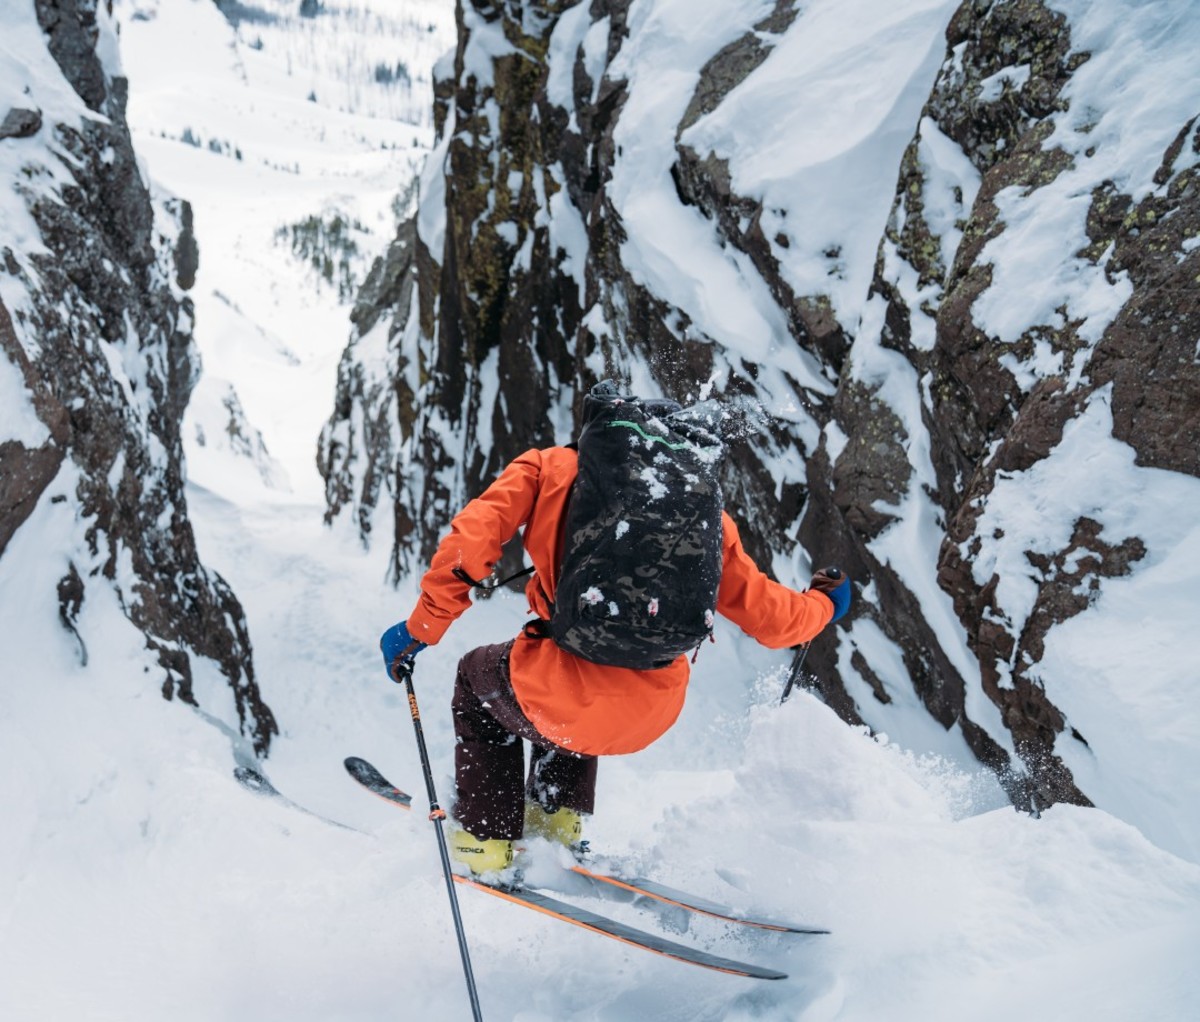 Skier in orange jacket skiing between mountainous boulders